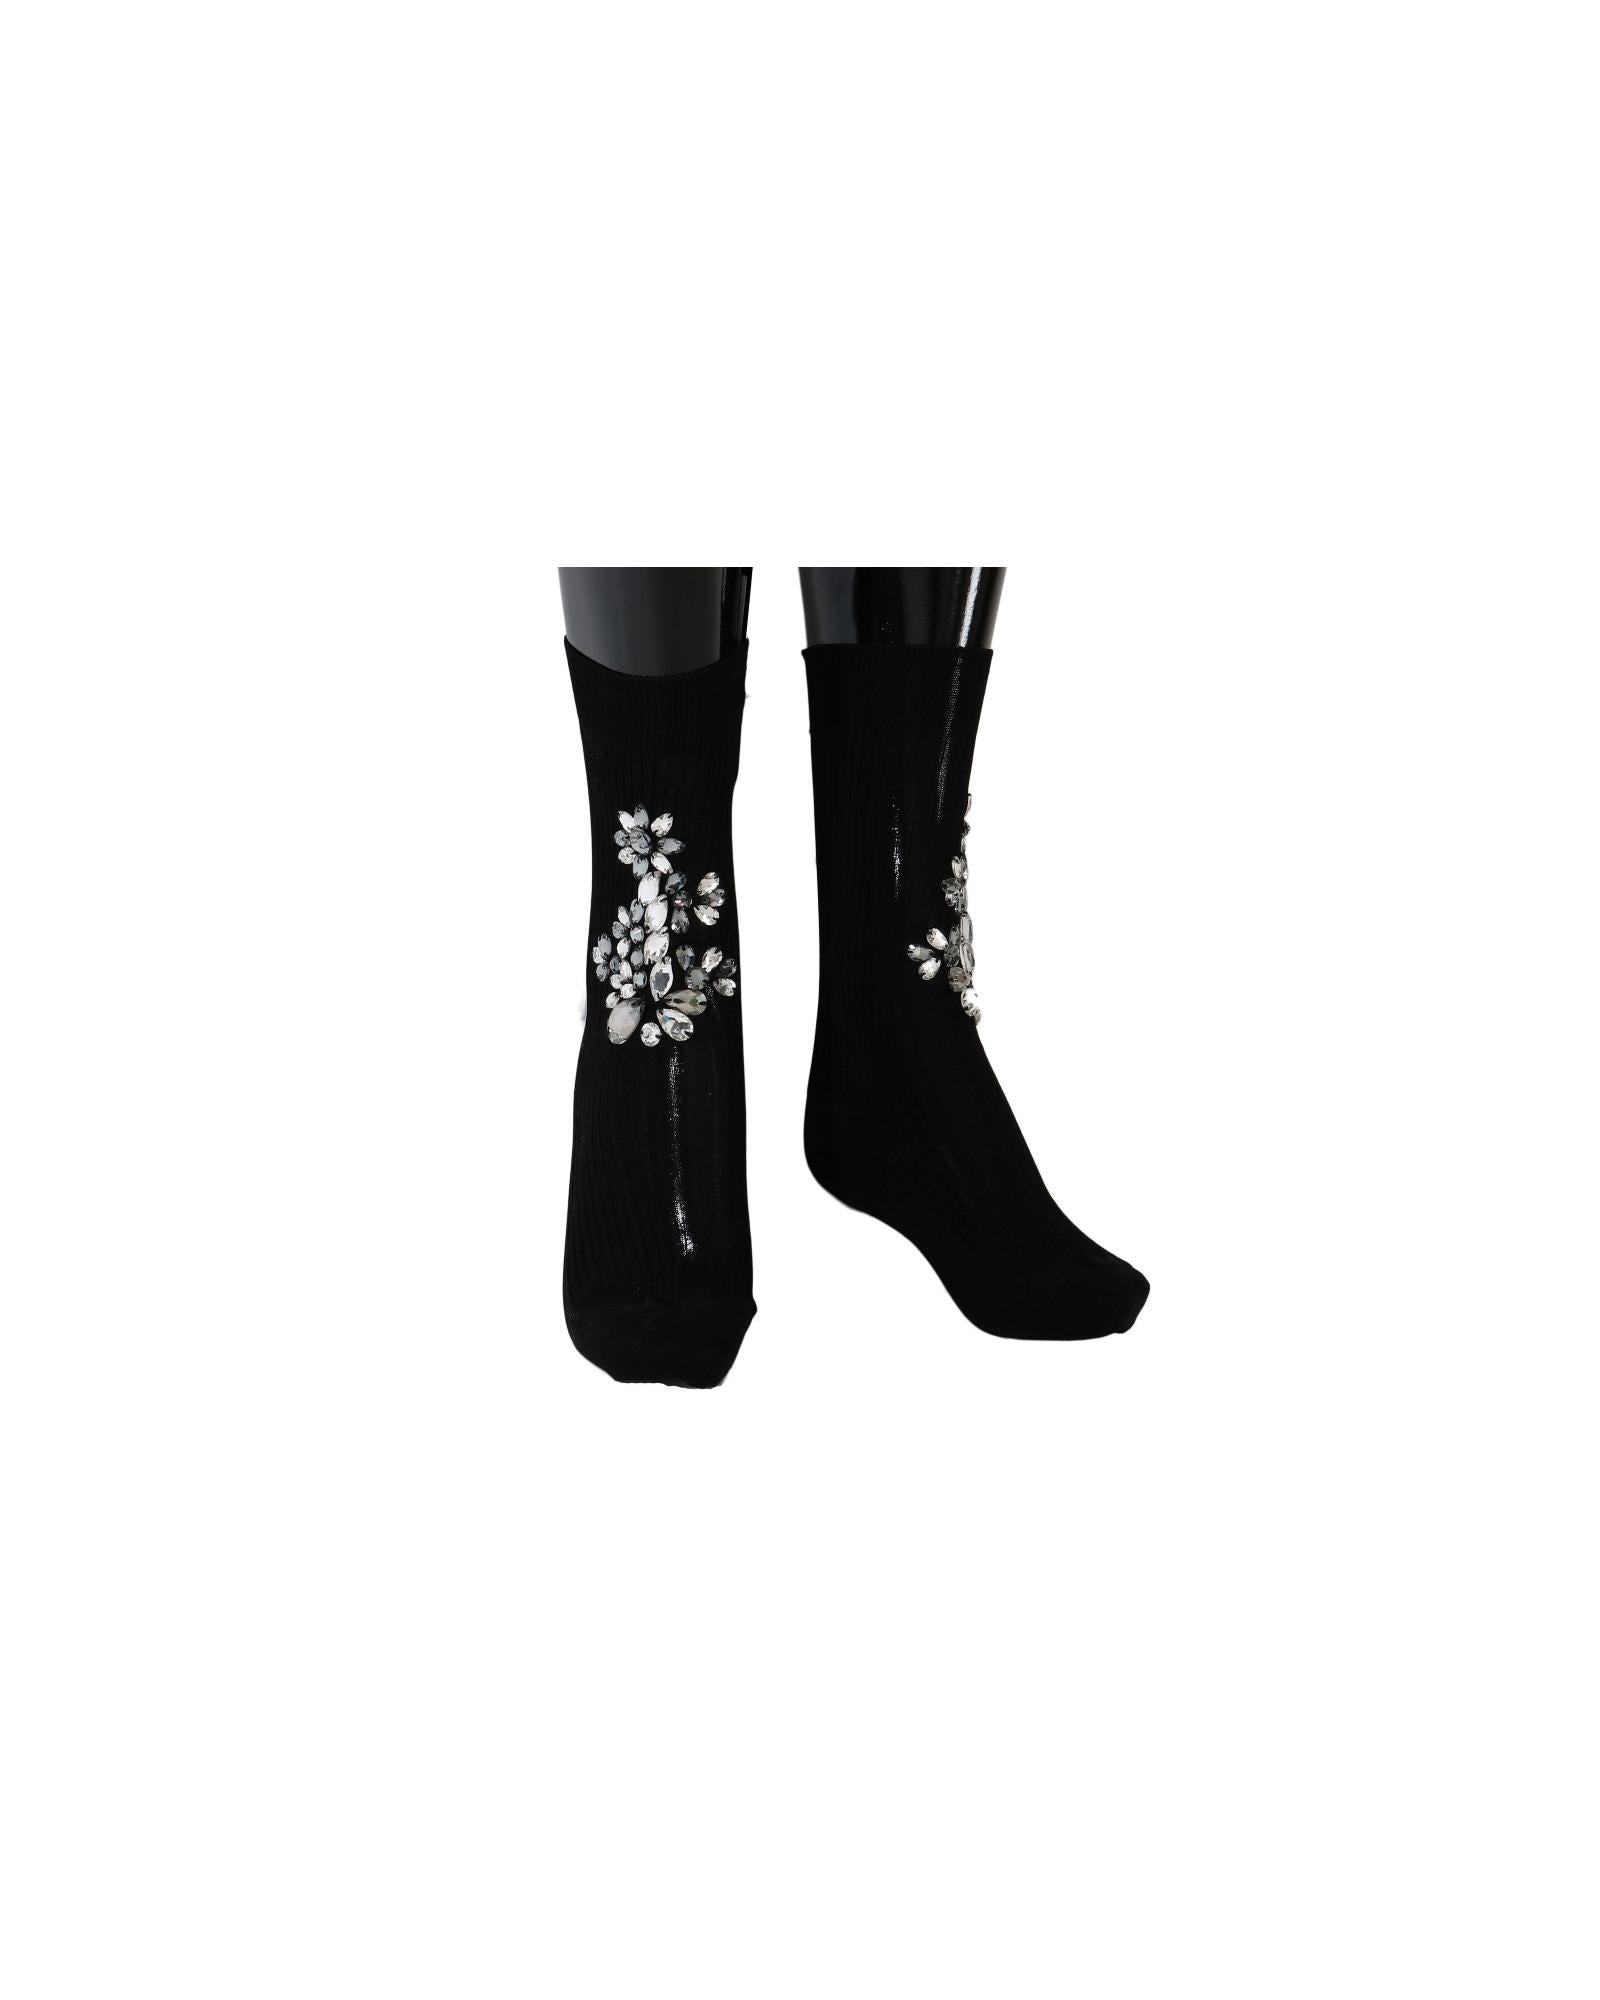 Floral Crystal Embellished Stockings Socks M Women